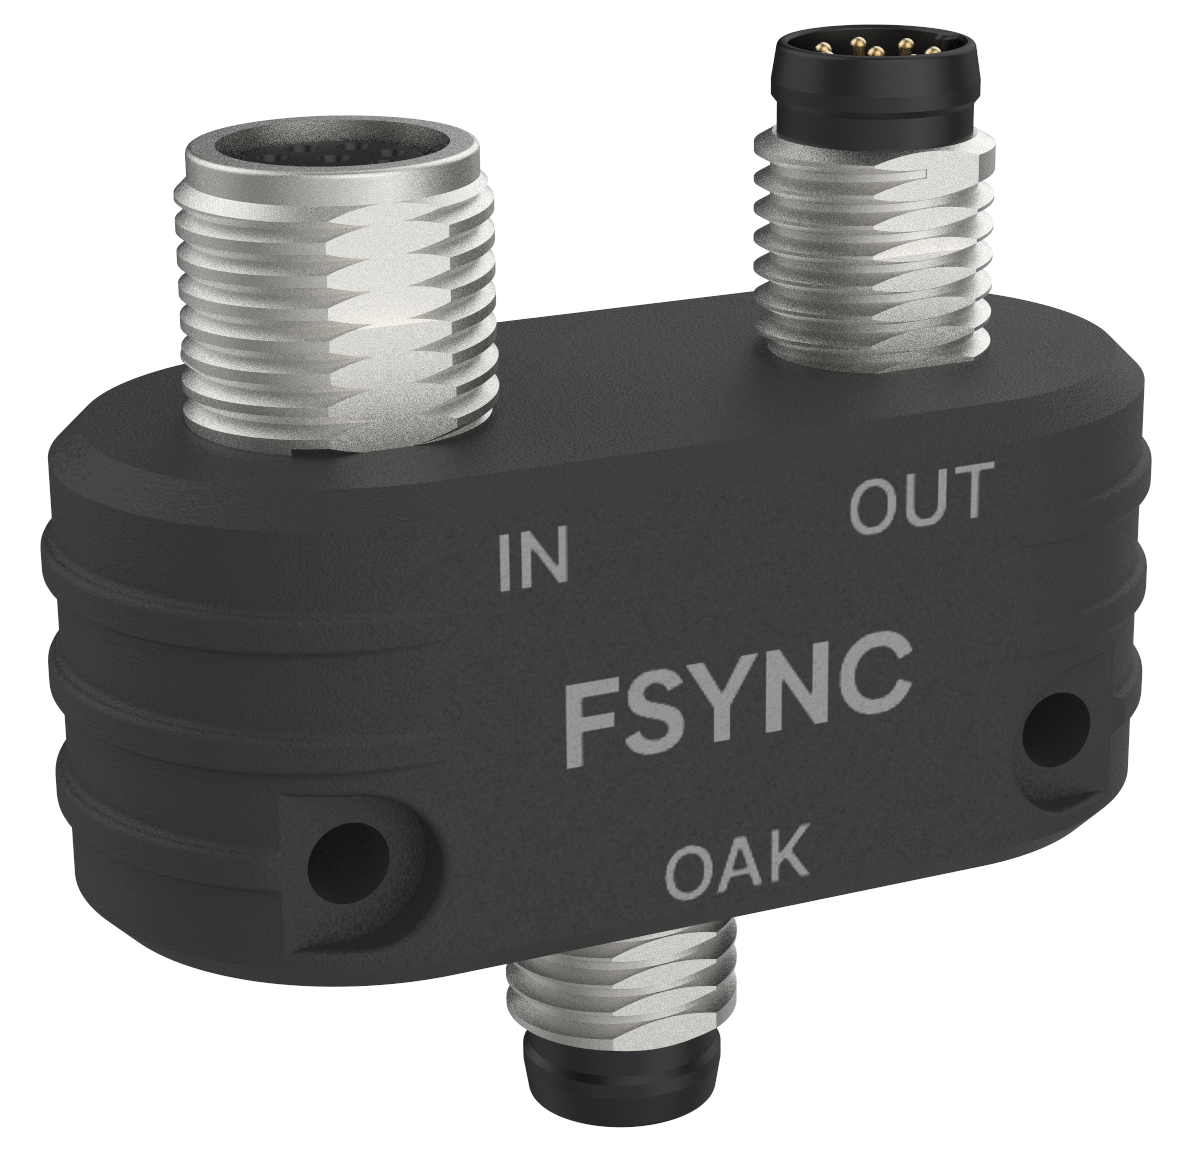 FSync Y-adapter